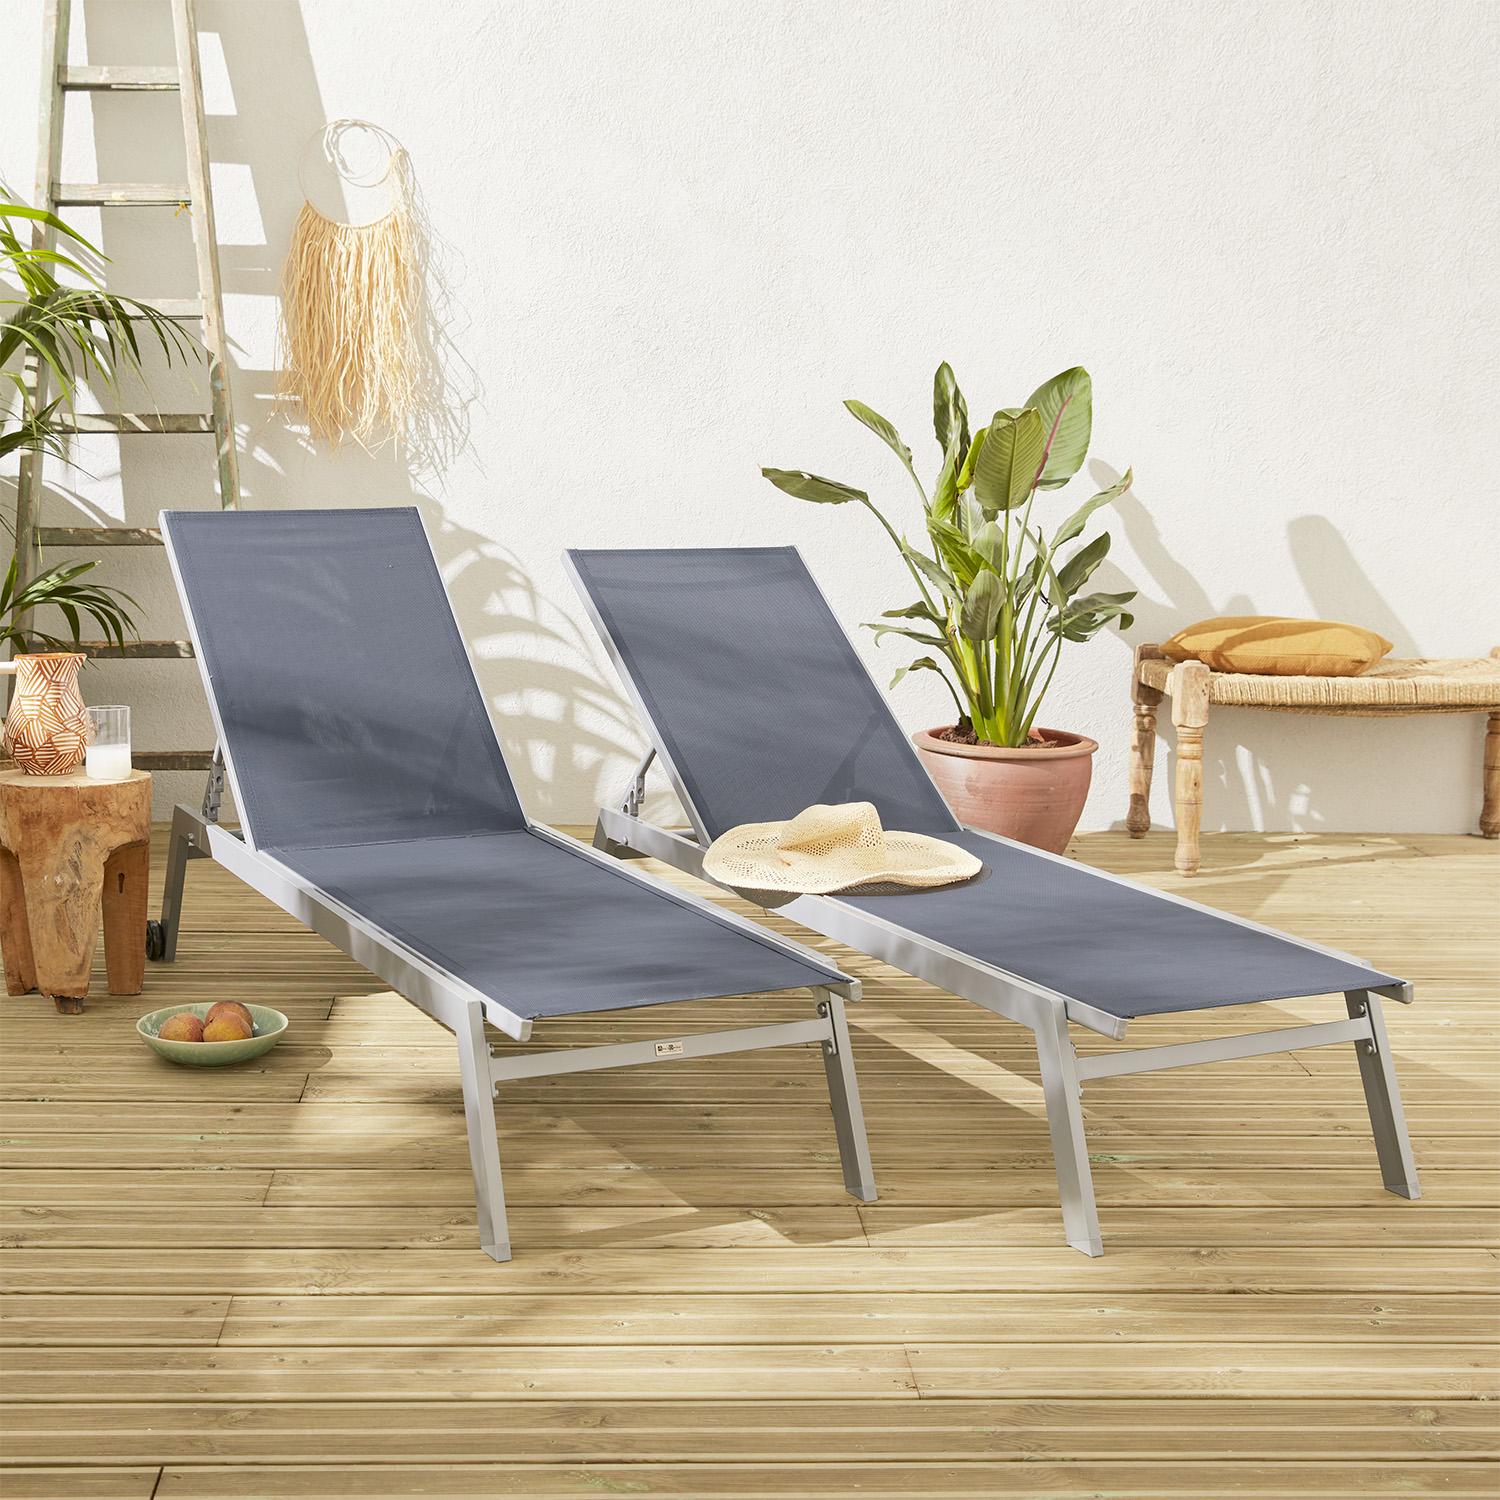 - Set 2 ligstoelen van aluminium en textileen, ligbed multipositioneel met wieltjes, kleur grijs/donkergrijs